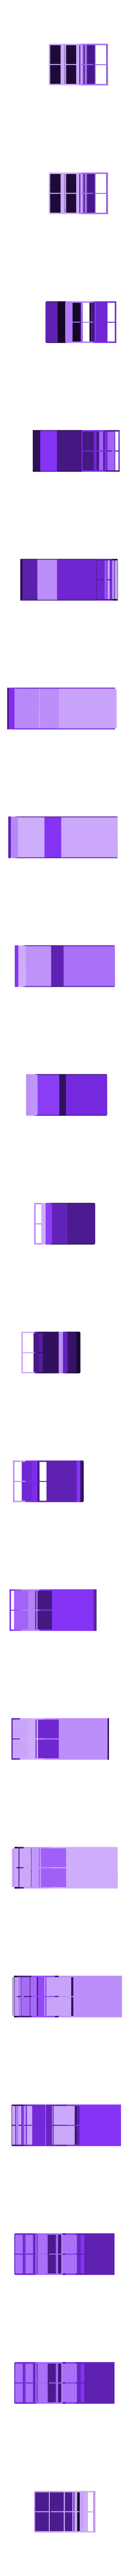 thruster (right).stl Télécharger fichier STL gratuit Delorean DMC-12/BTTF Time Machine Voiture RC imprimée en 3D • Modèle imprimable en 3D, brett